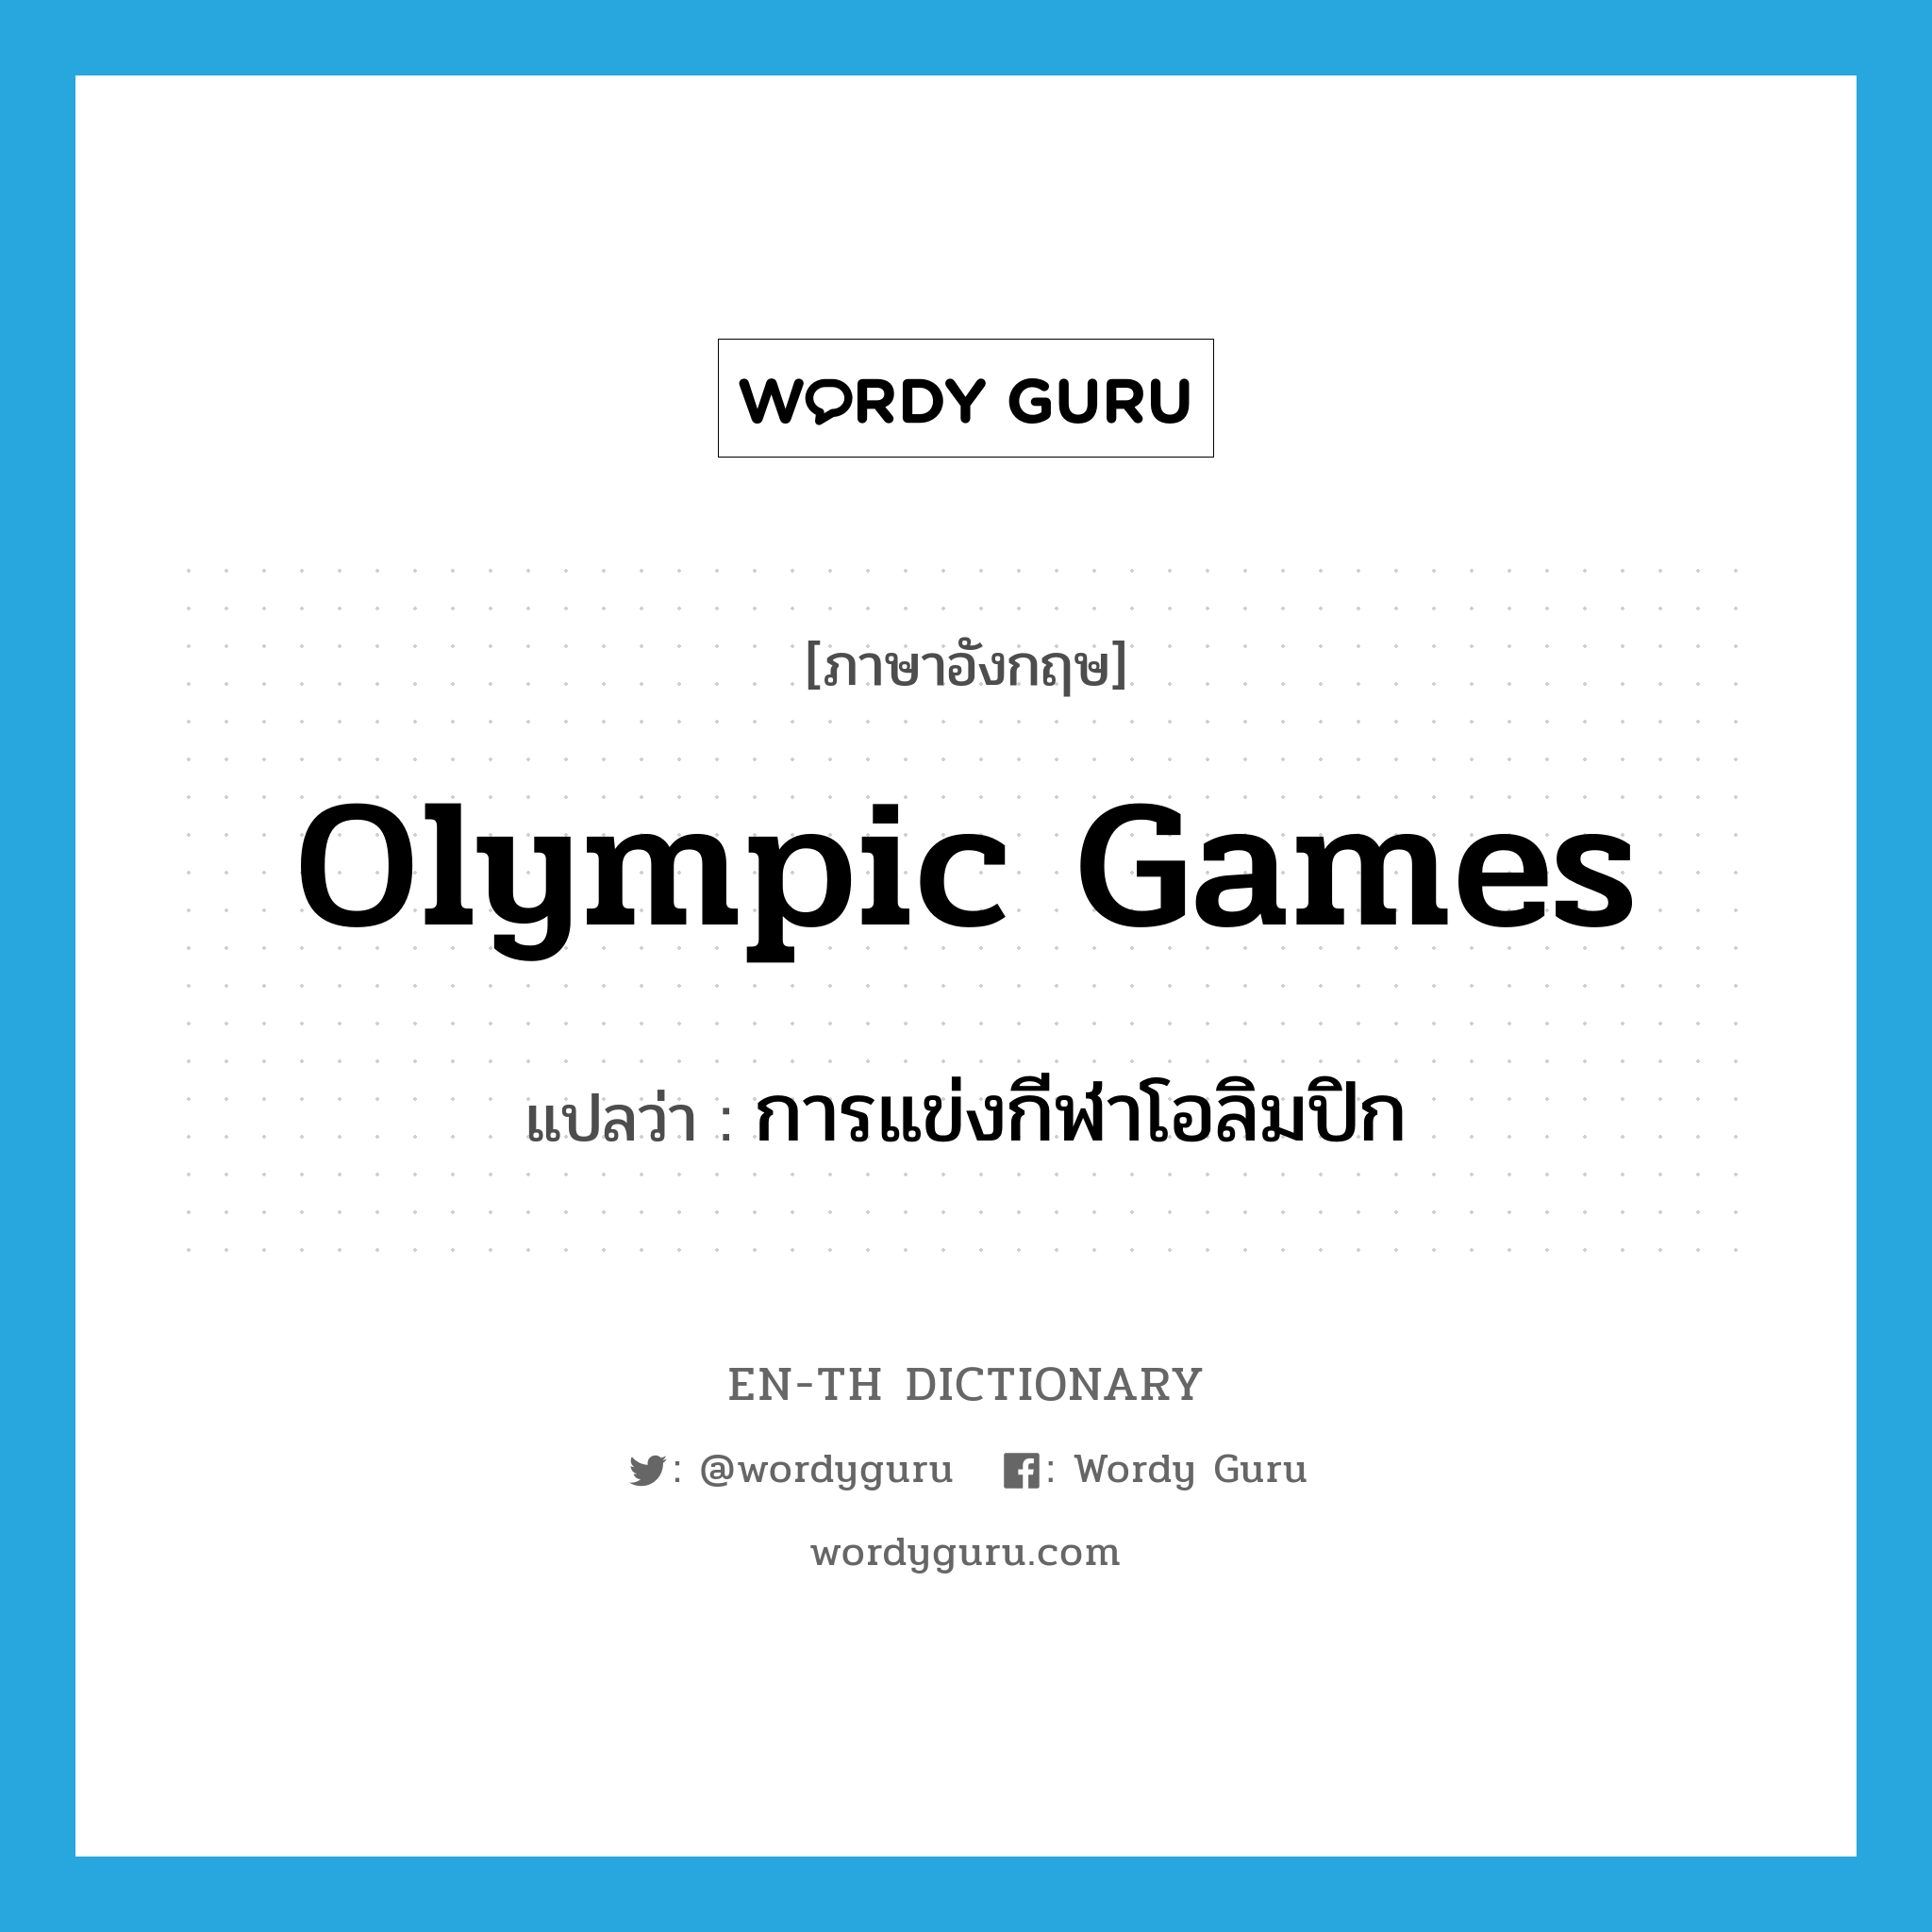 การแข่งกีฬาโอลิมปิก ภาษาอังกฤษ?, คำศัพท์ภาษาอังกฤษ การแข่งกีฬาโอลิมปิก แปลว่า Olympic Games ประเภท N หมวด N